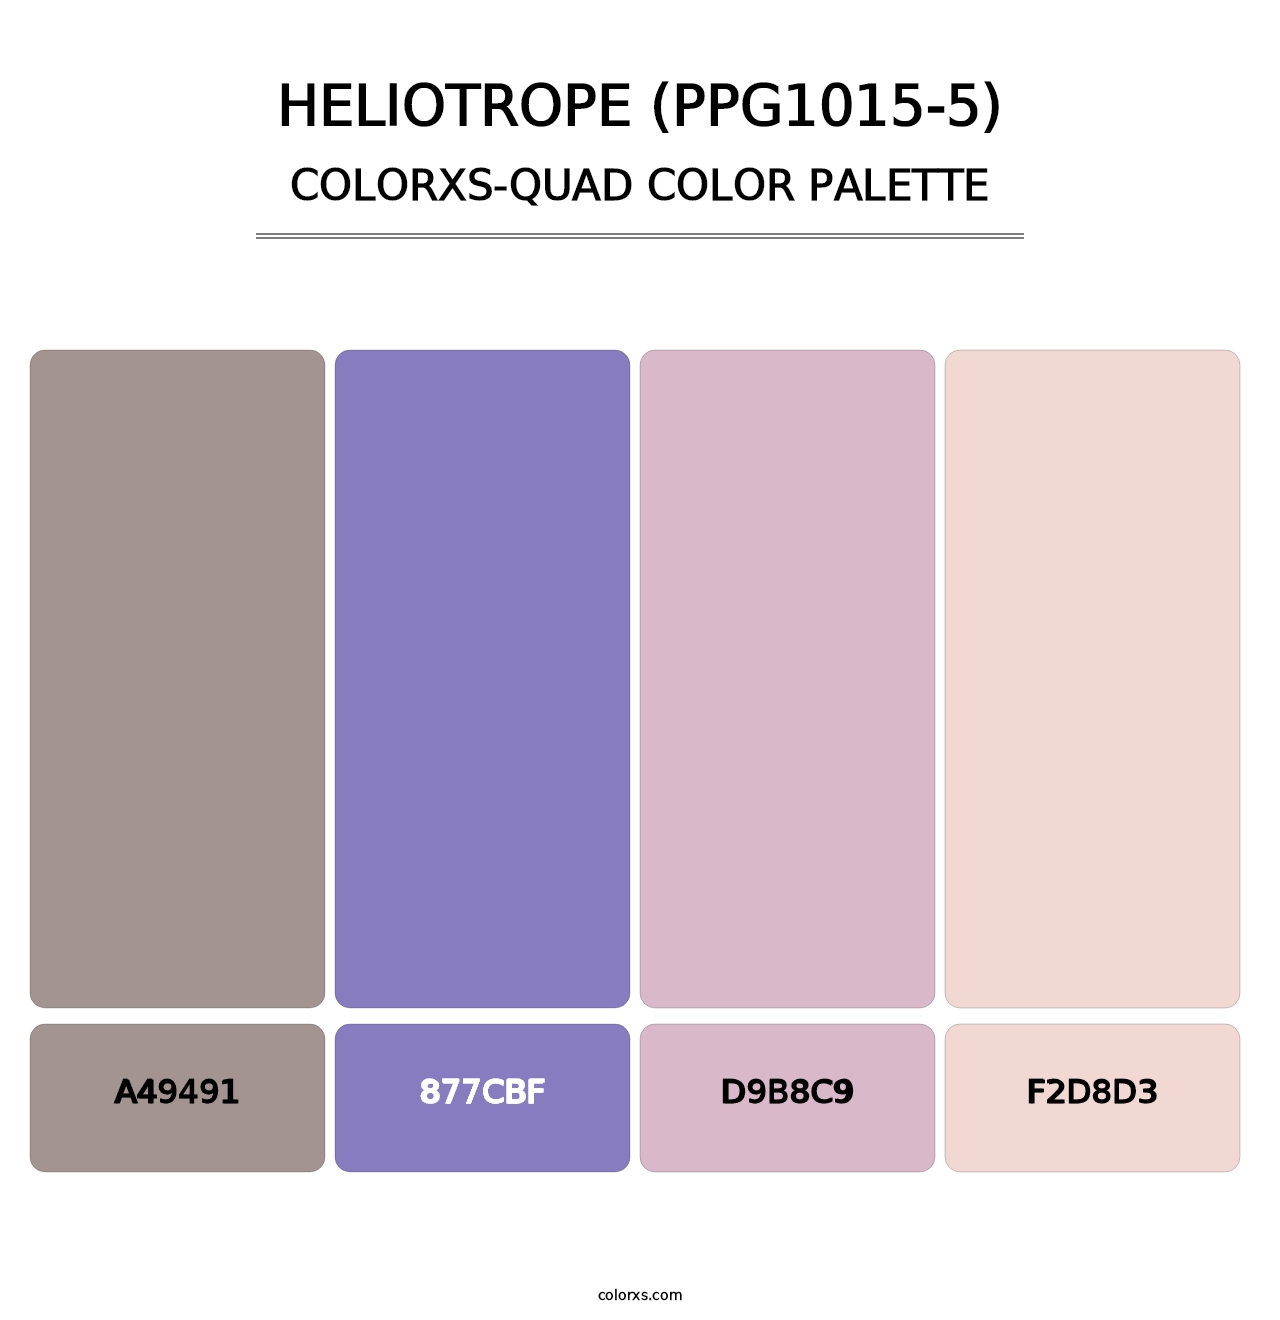 Heliotrope (PPG1015-5) - Colorxs Quad Palette